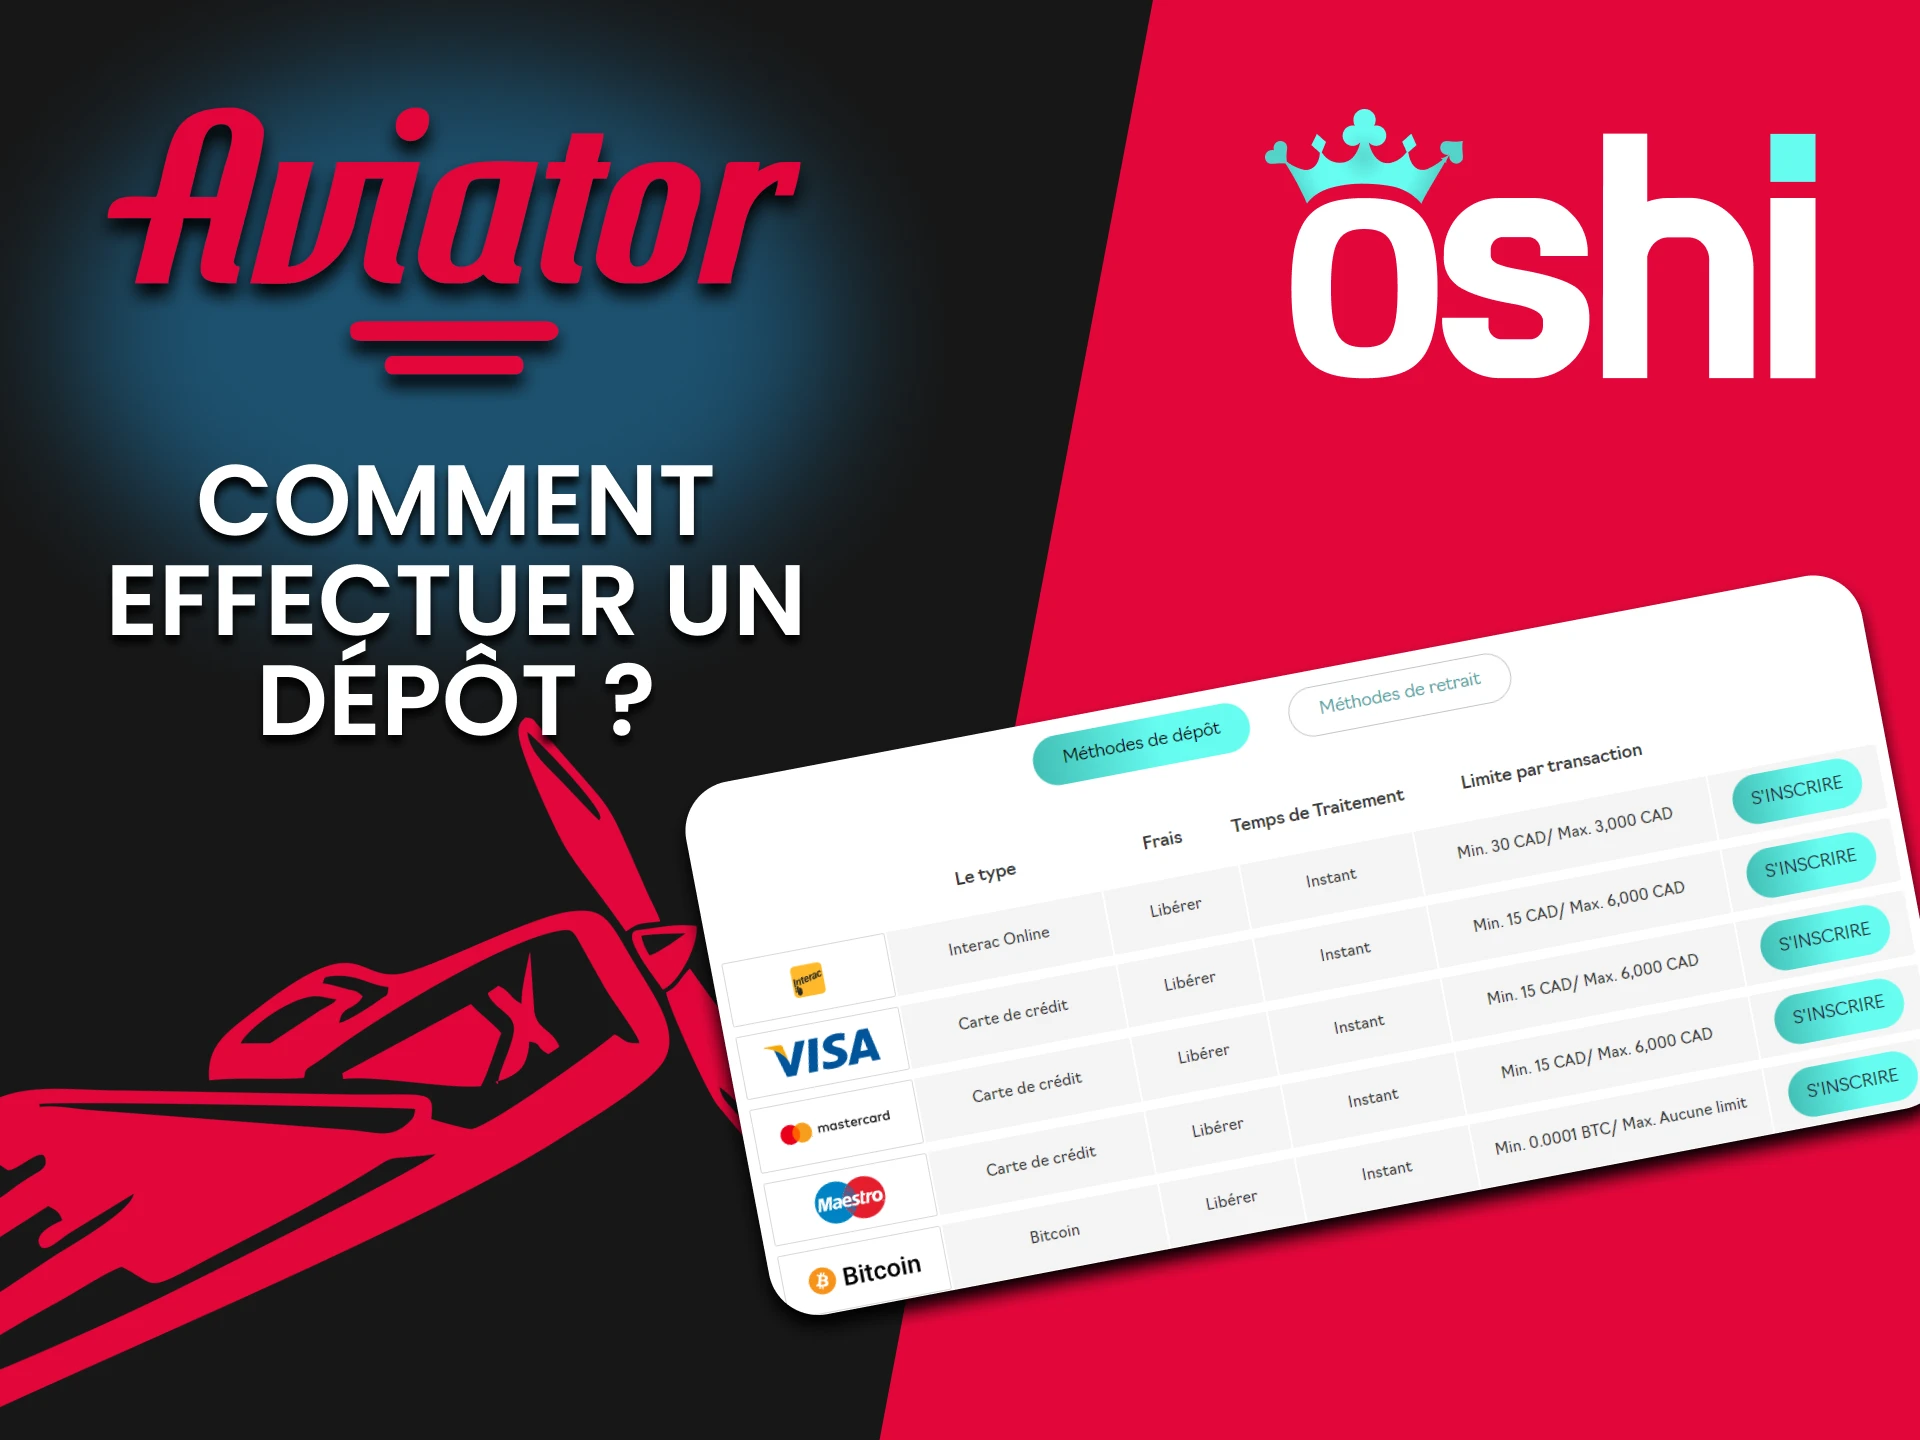 Nous vous parlerons de la méthode de reconstitution des fonds pour Aviator sur Oshi Casino.